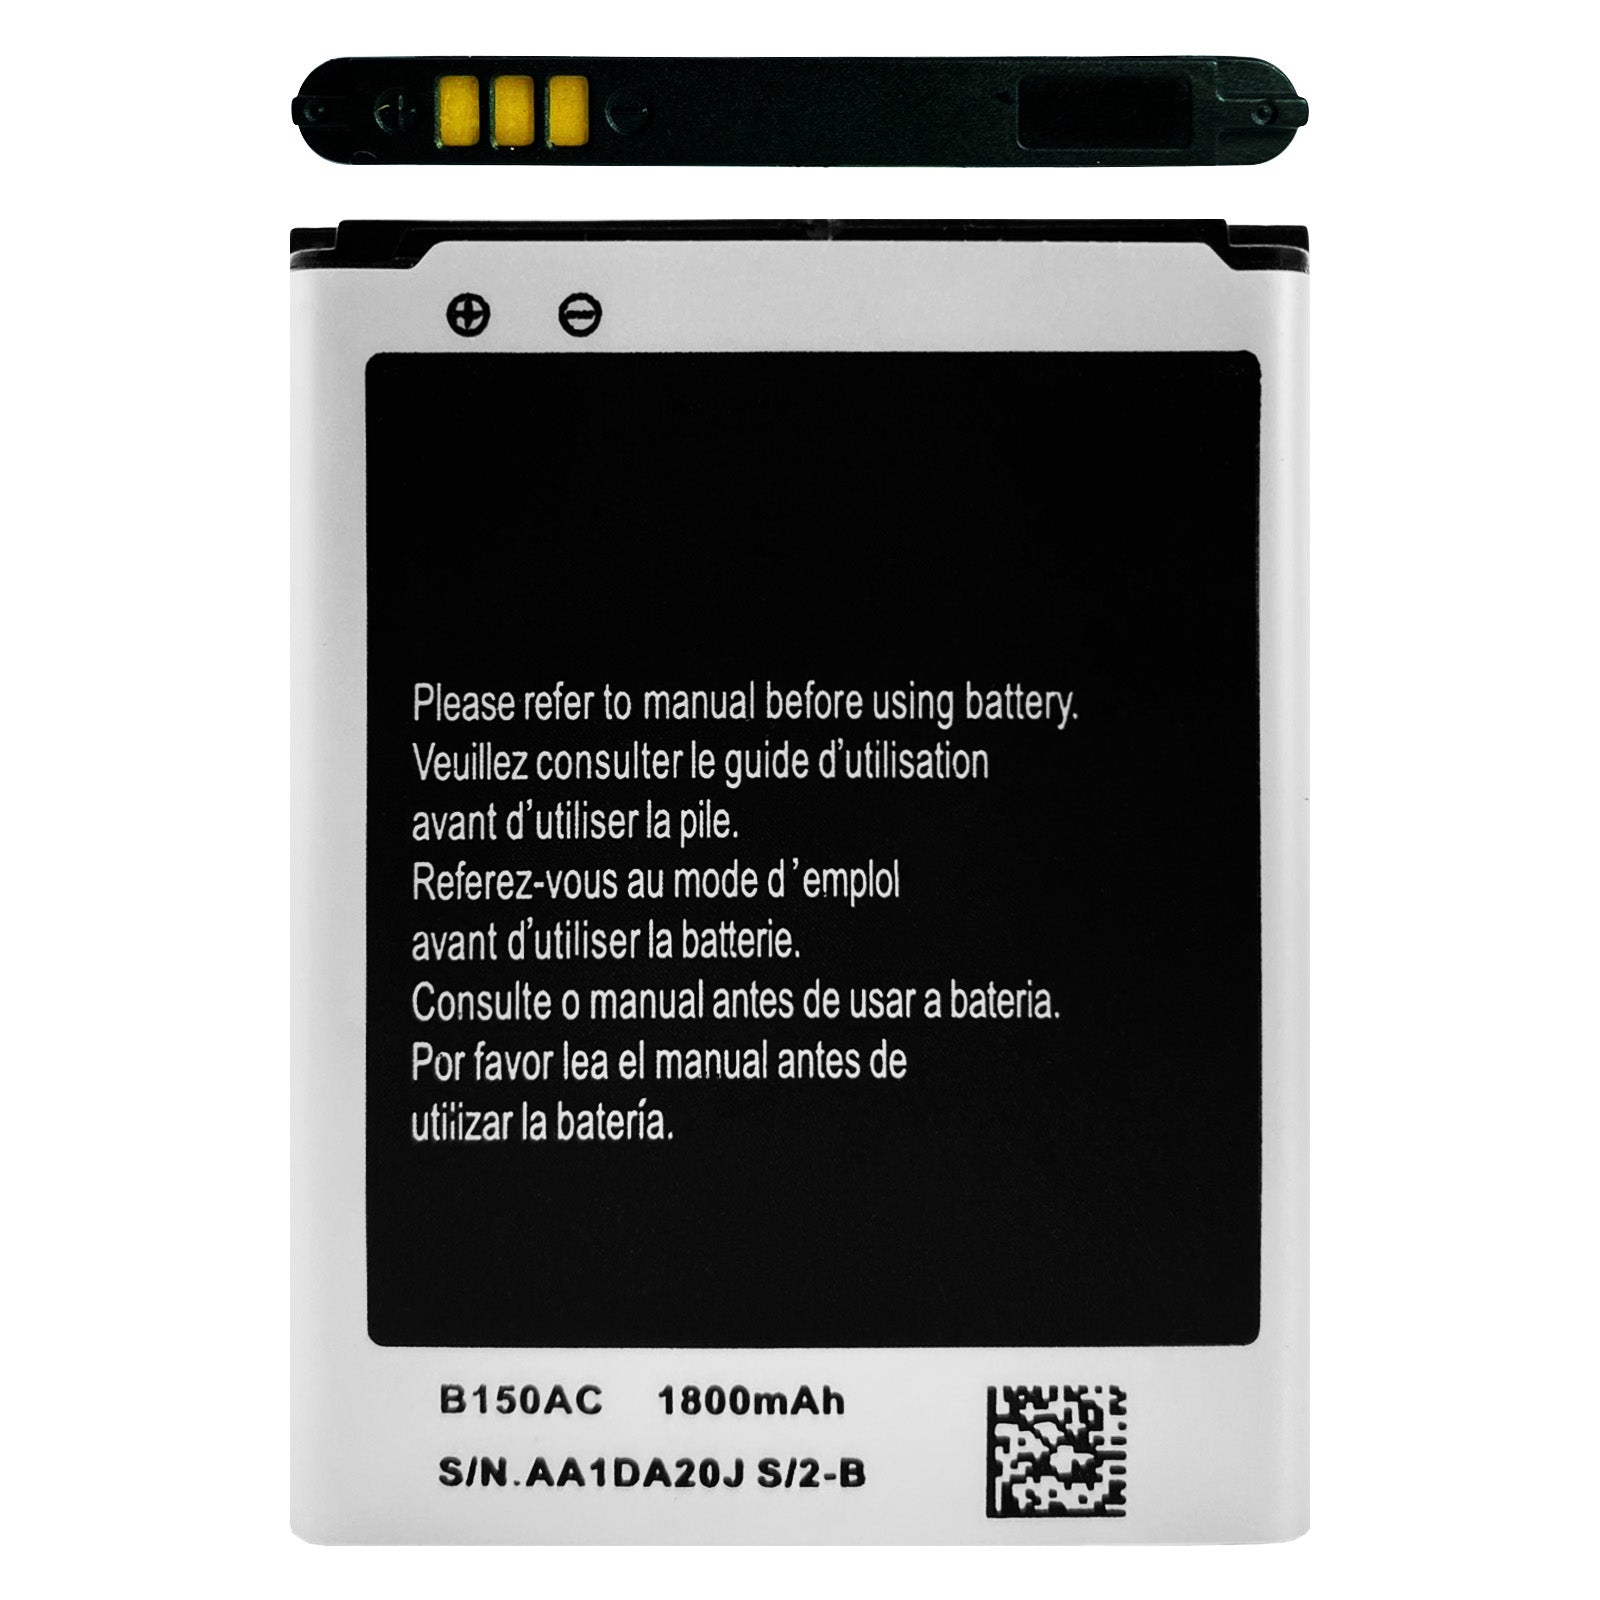 Dieser Akku ist ein Ersatz für den Samsung Galaxy Core GT-i8260 DuoS i8262 Plus SM-G350 und kann die Akkulaufzeit verbessern. Der Einbau kann selbst durchgeführt werden.